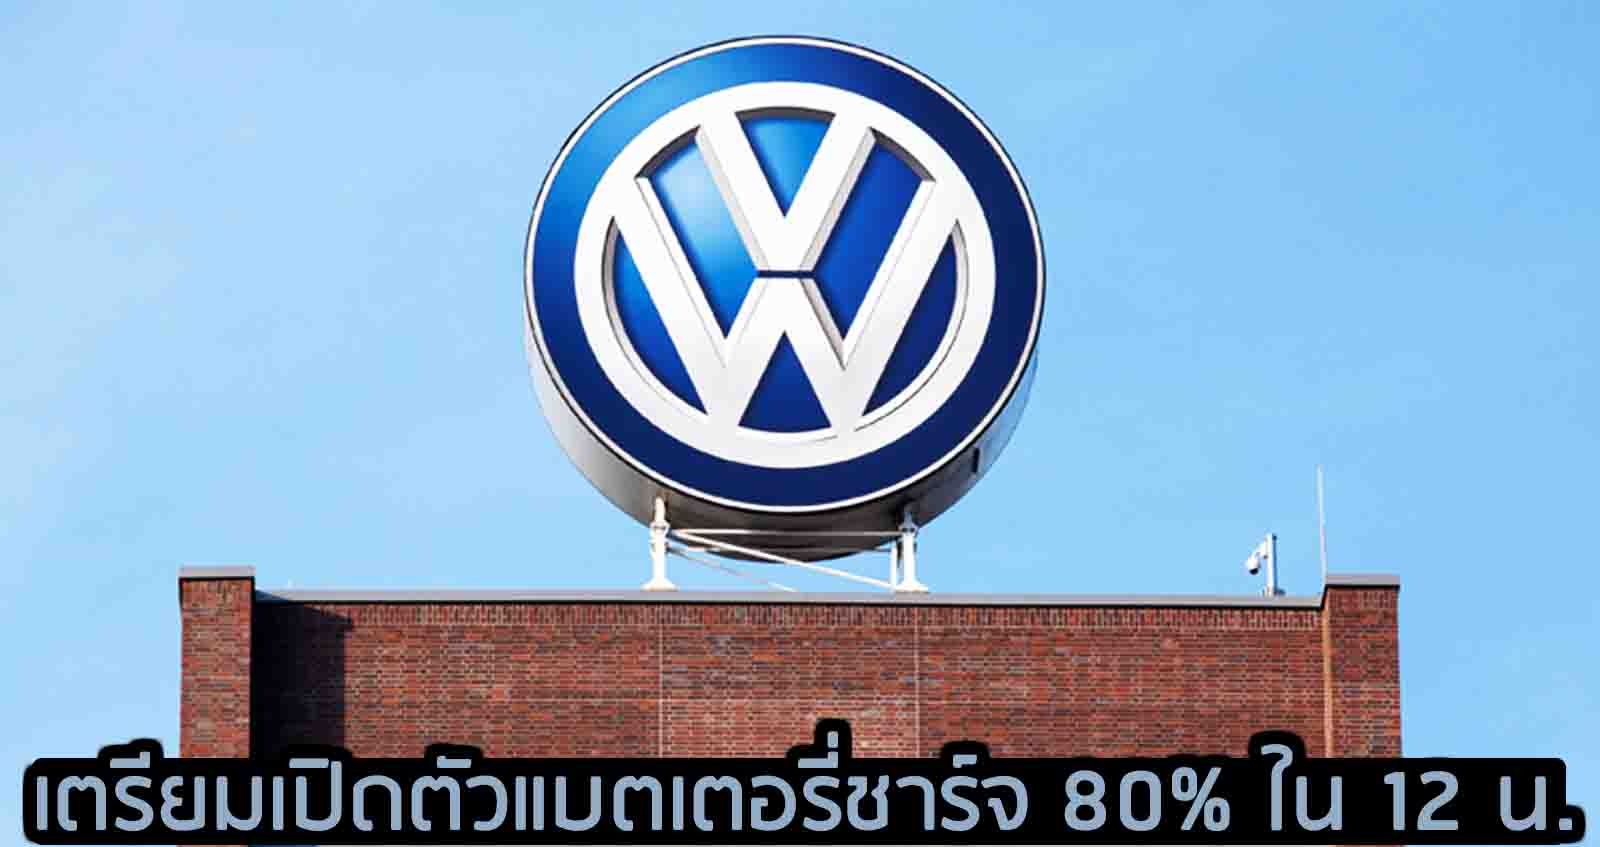 Volkswagen Group เผยเตรียมเปิดตัว แบตเตอรี่ชาร์จ 80% ภายใน 12 นาที อีก 4 ปีข้างหน้า